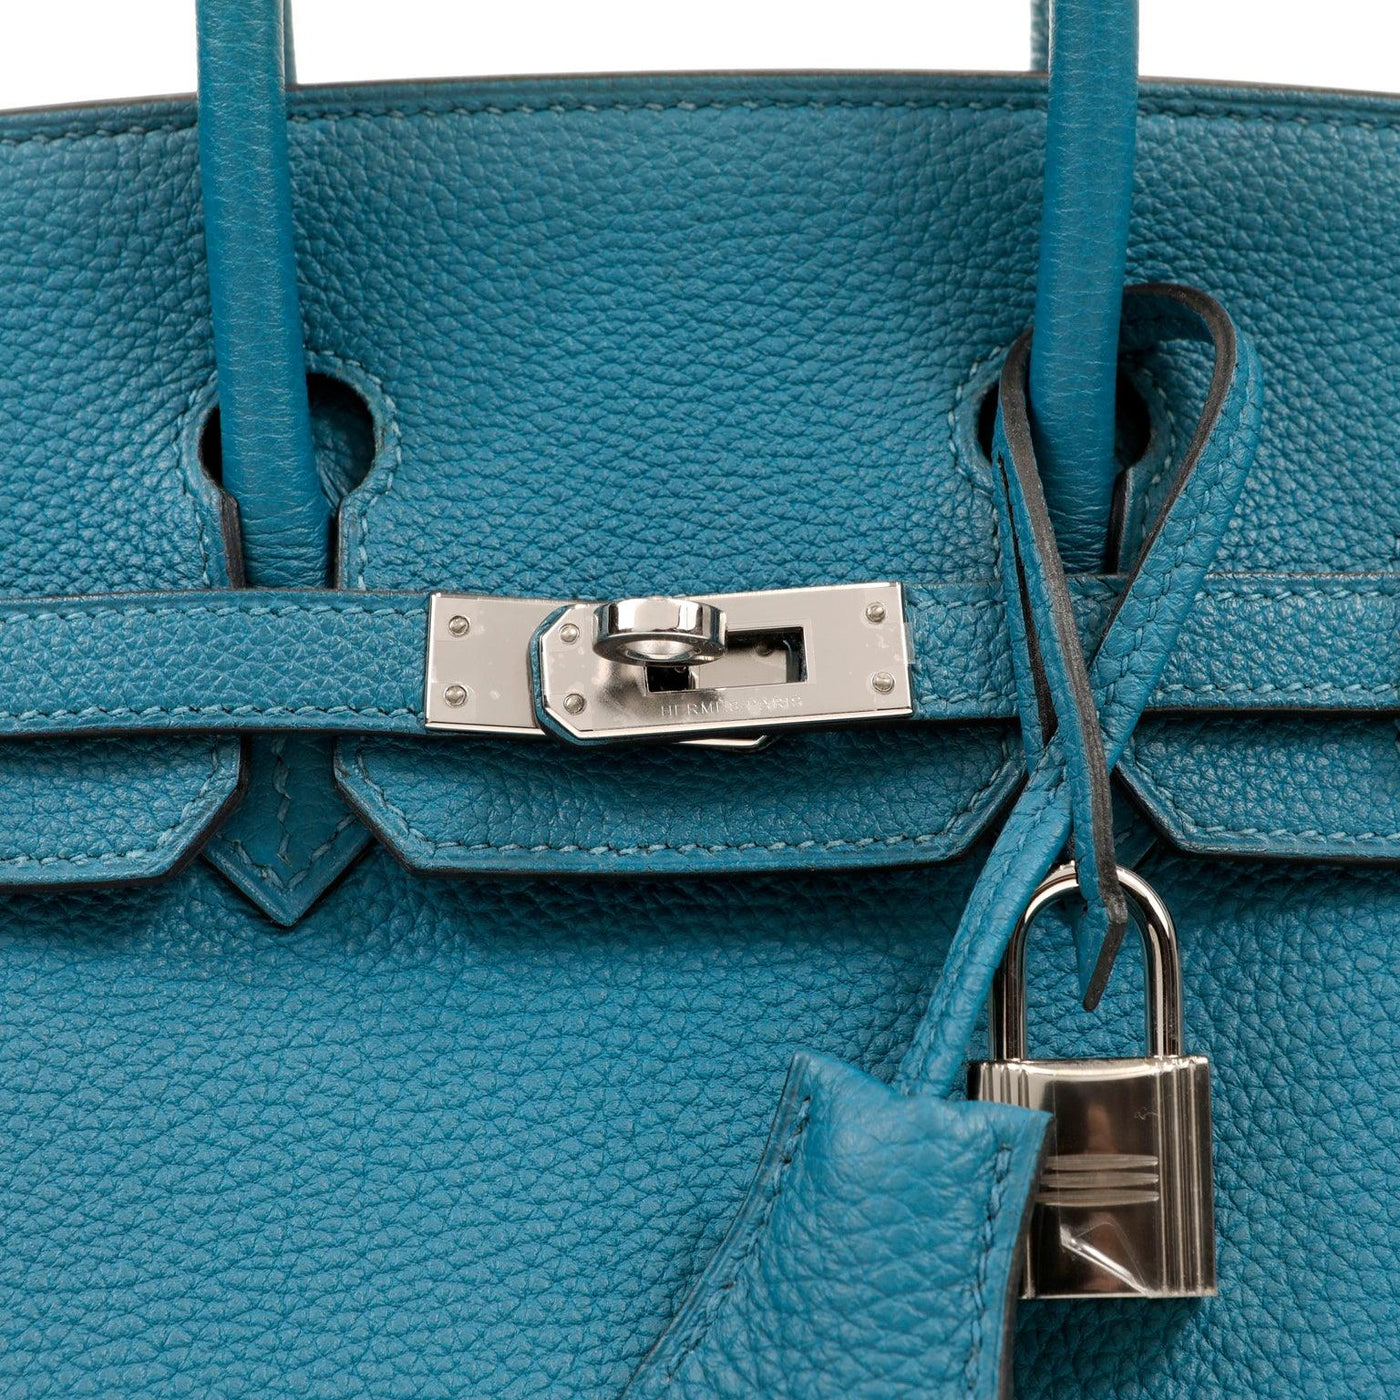 Hermès 25cm Colvert Togo Birkin with Palladium Hardware - Only Authentics